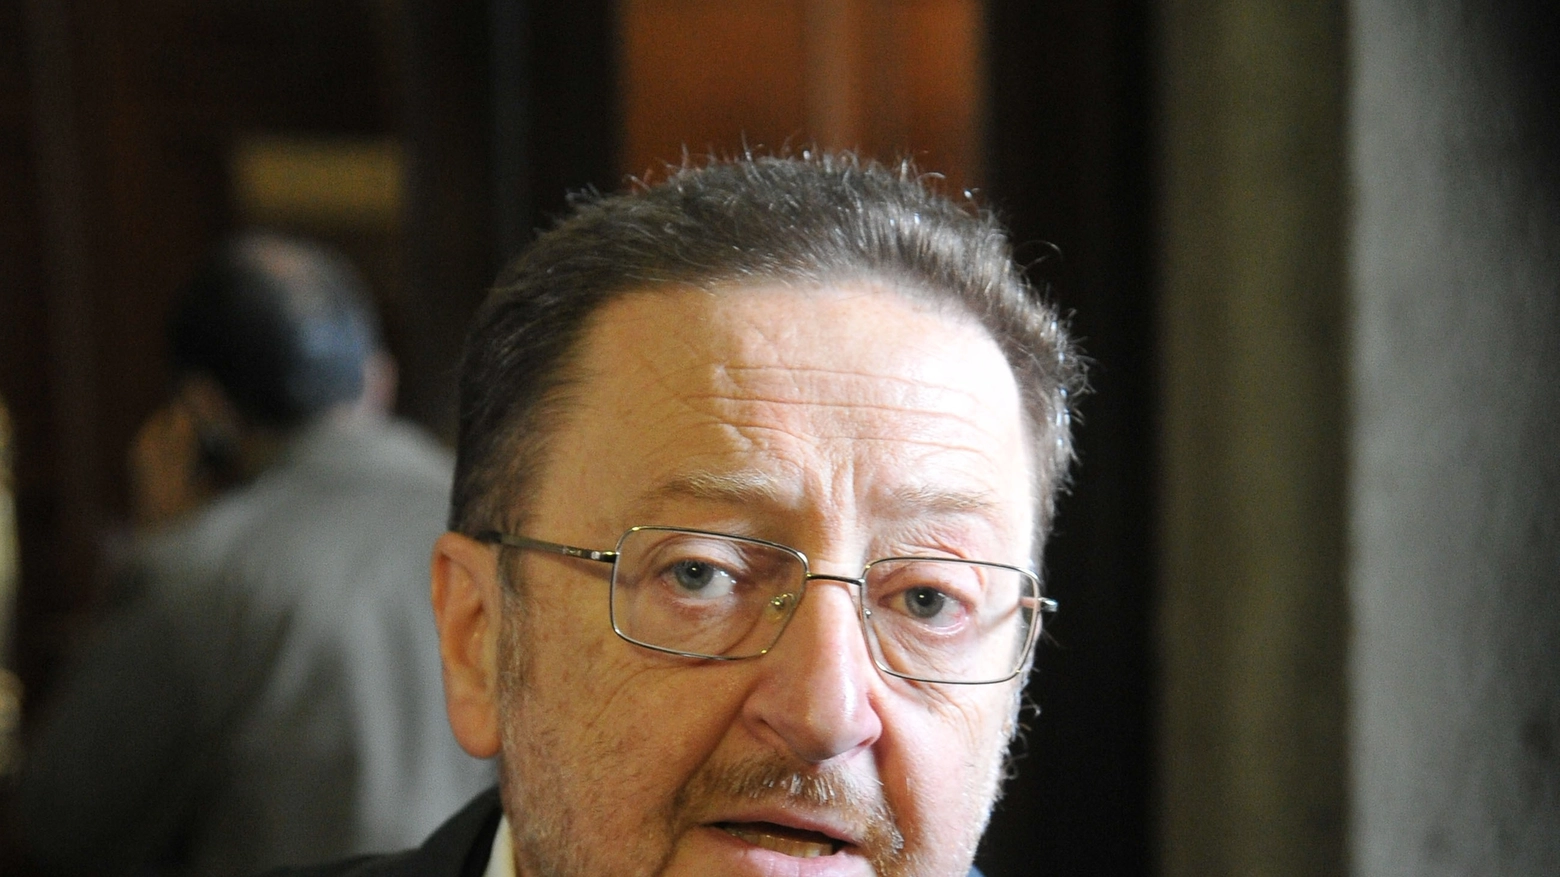 Riccardo De Corato, ex vicesindaco di Milano e capogruppo di FDI in Regione Lombardia